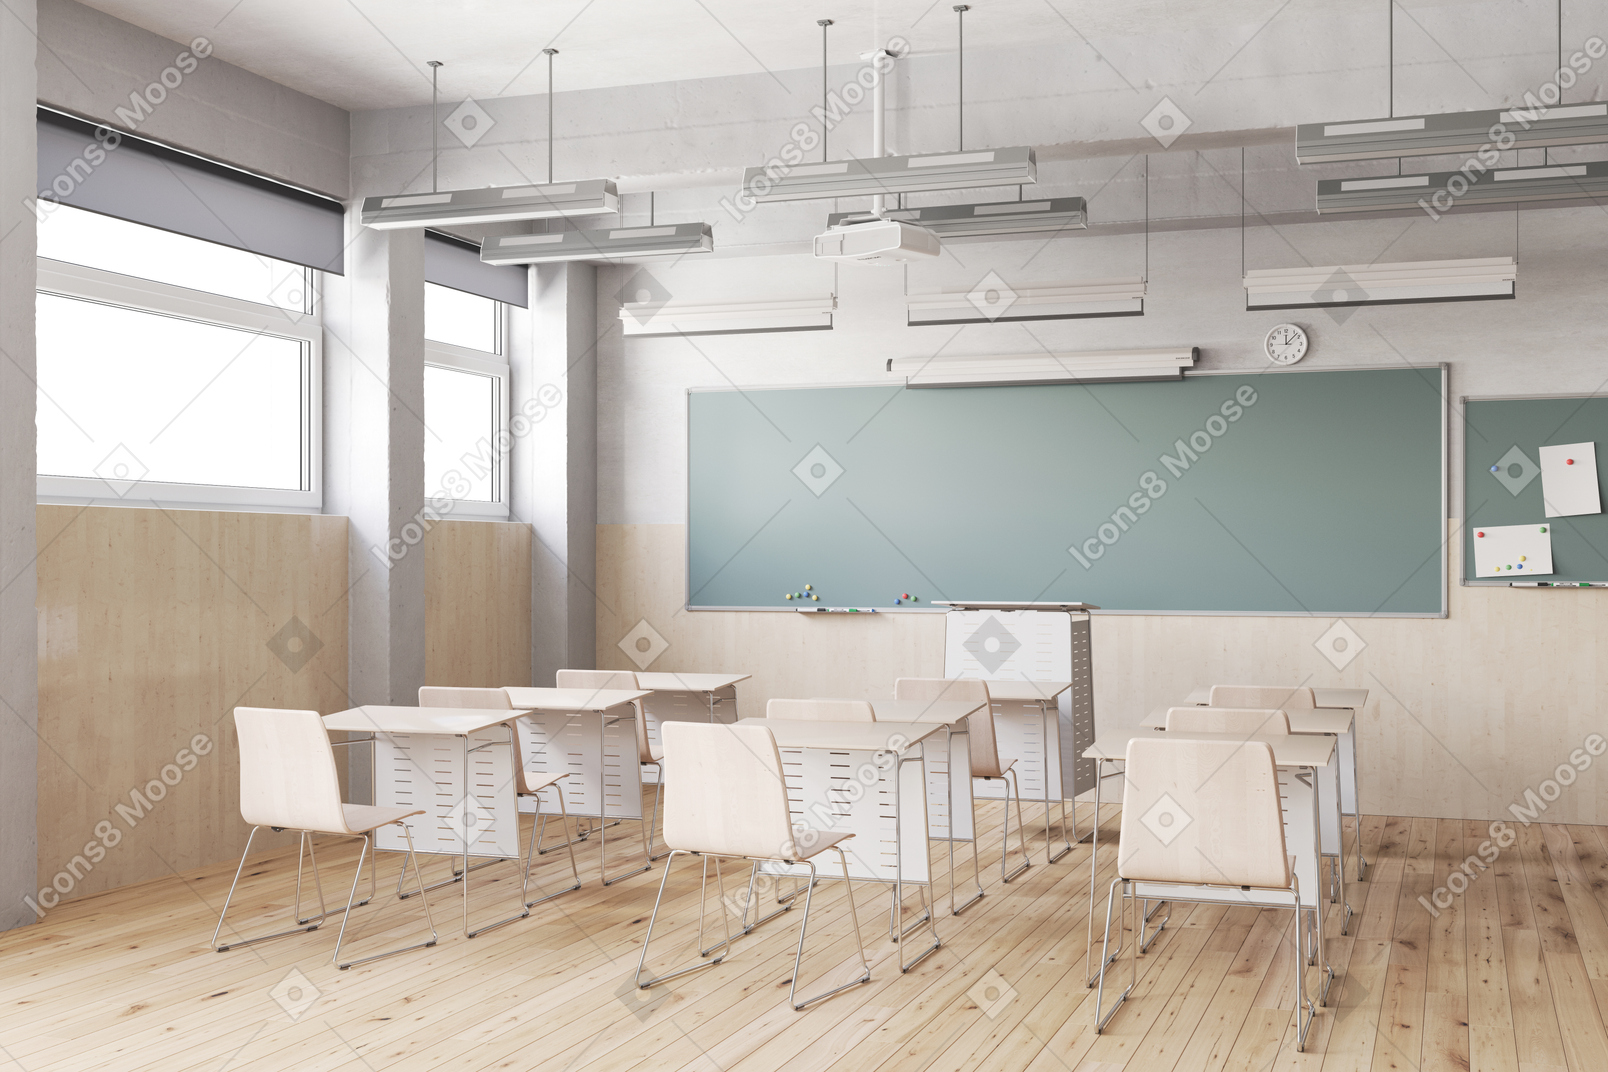 책상, 의자, 칠판이 있는 교실